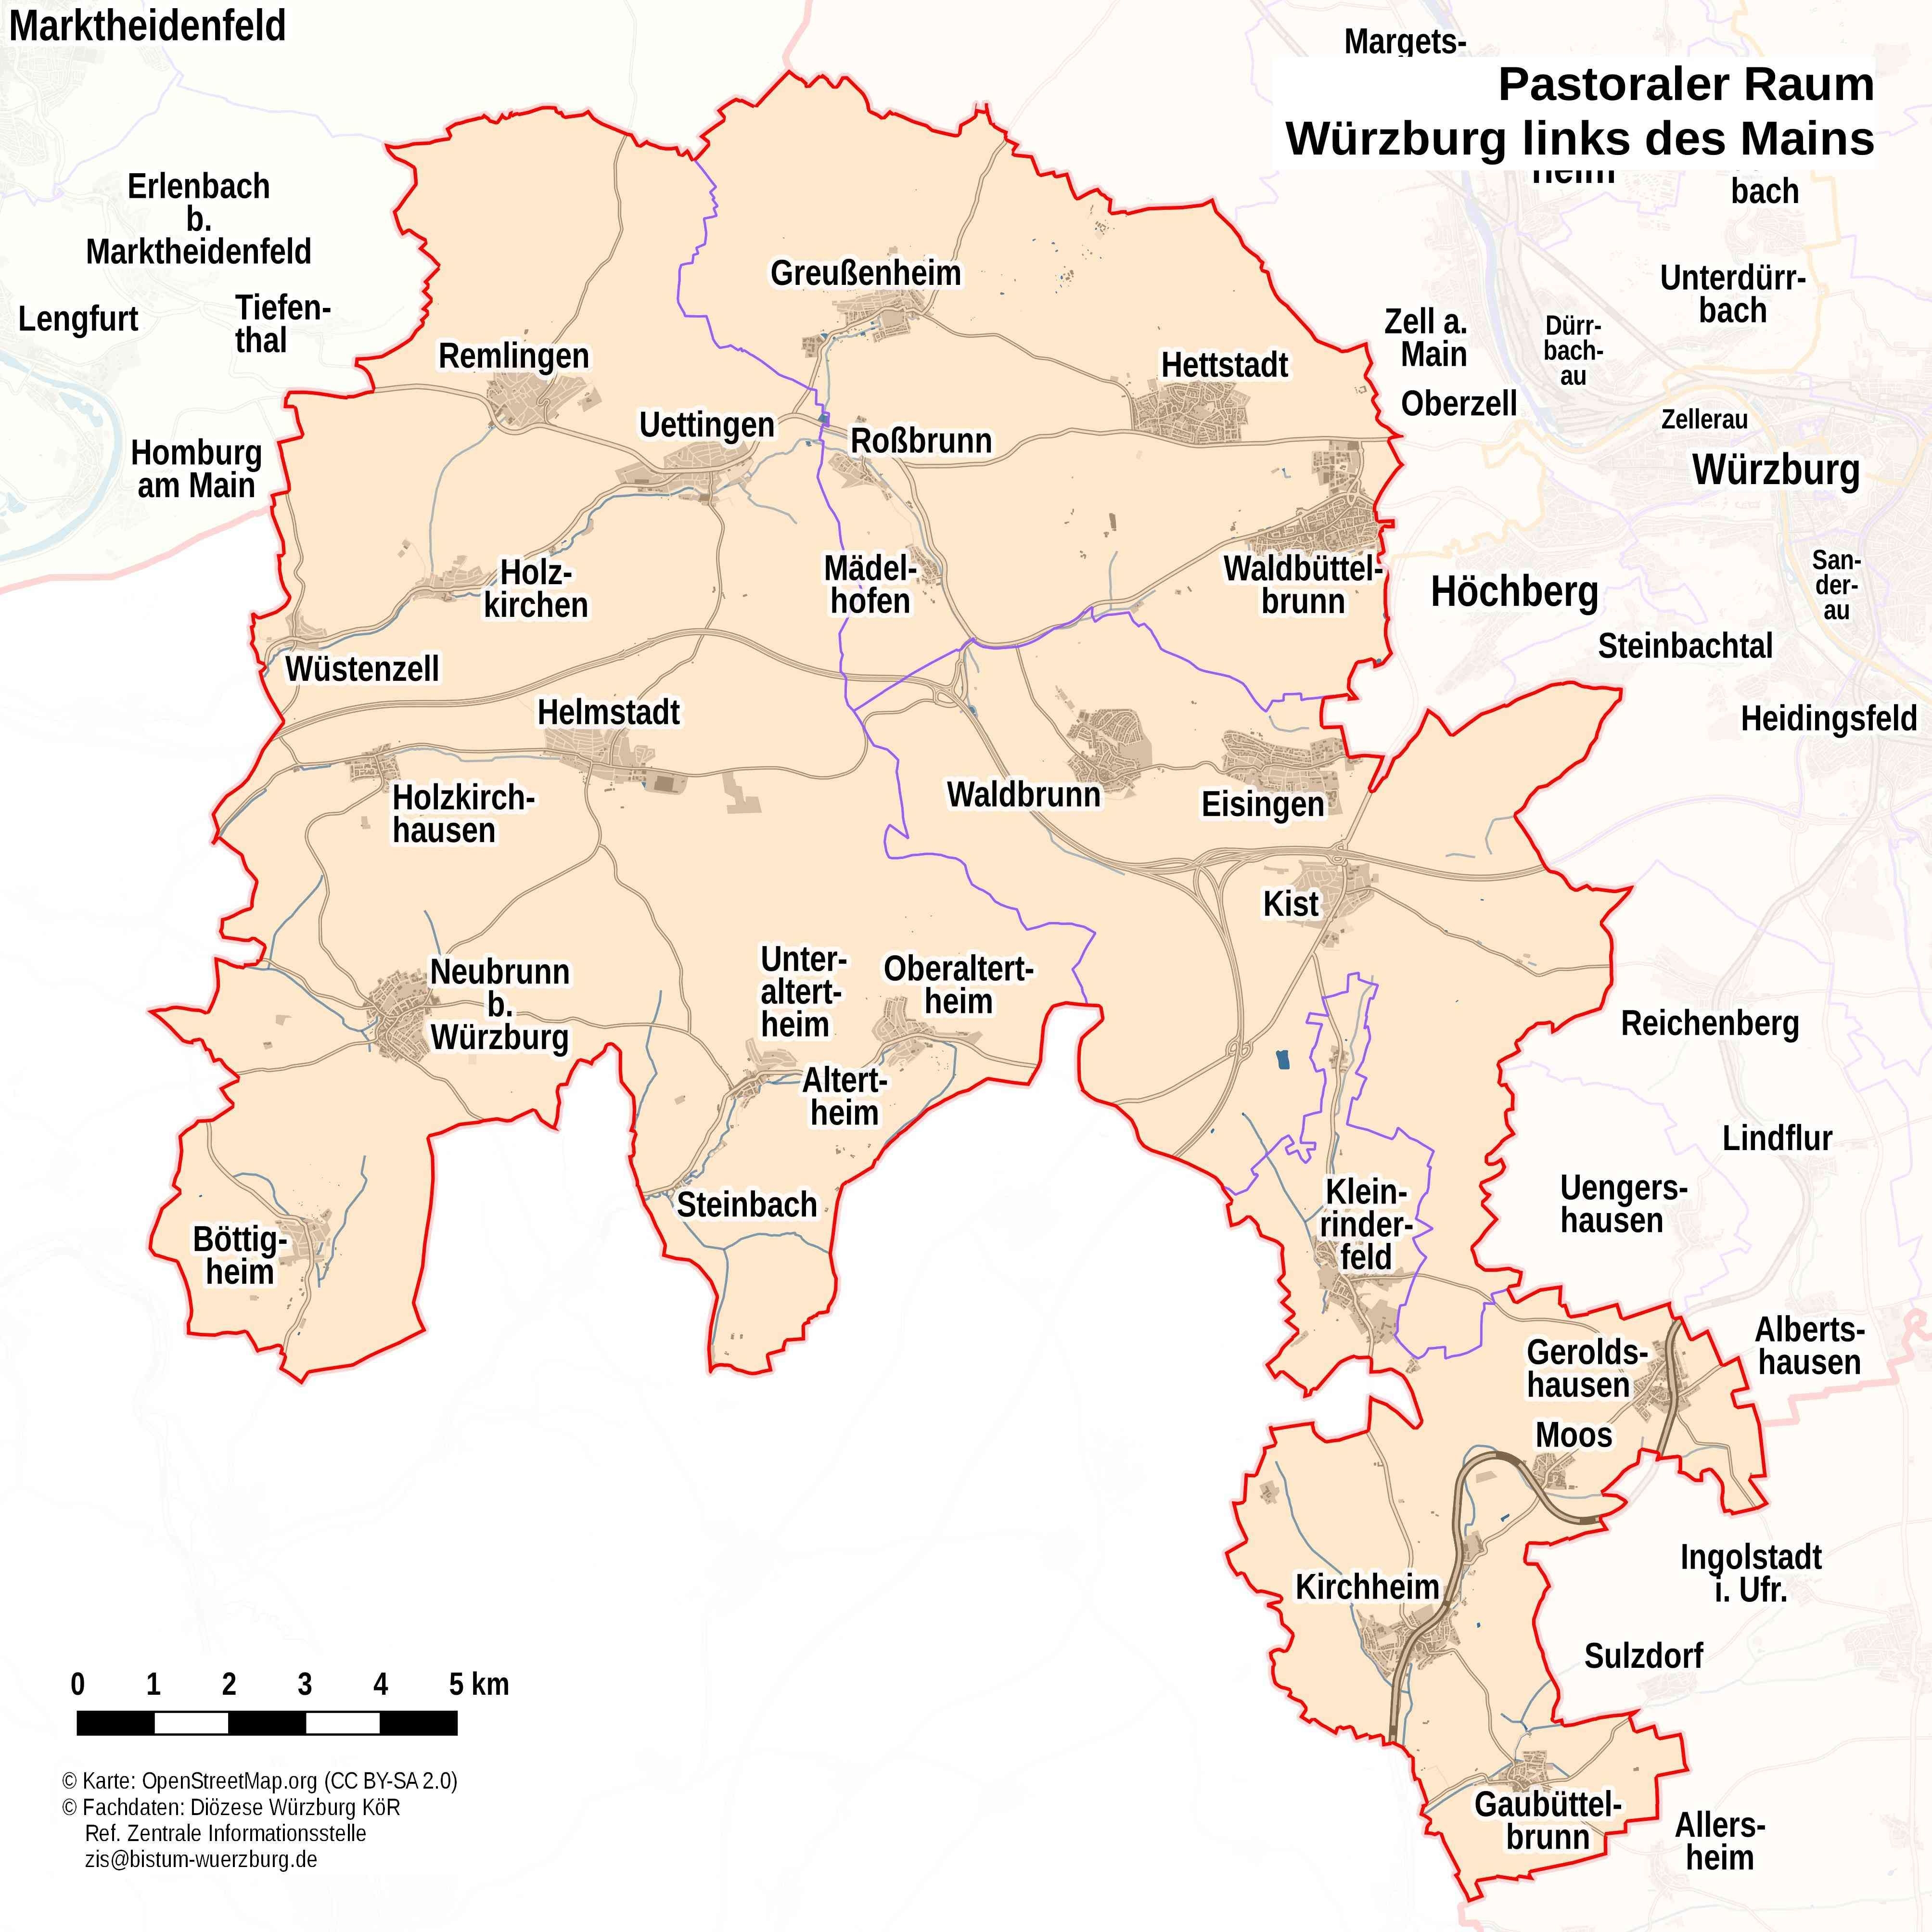 Karte Pastoraler Raum Würzburg ldM